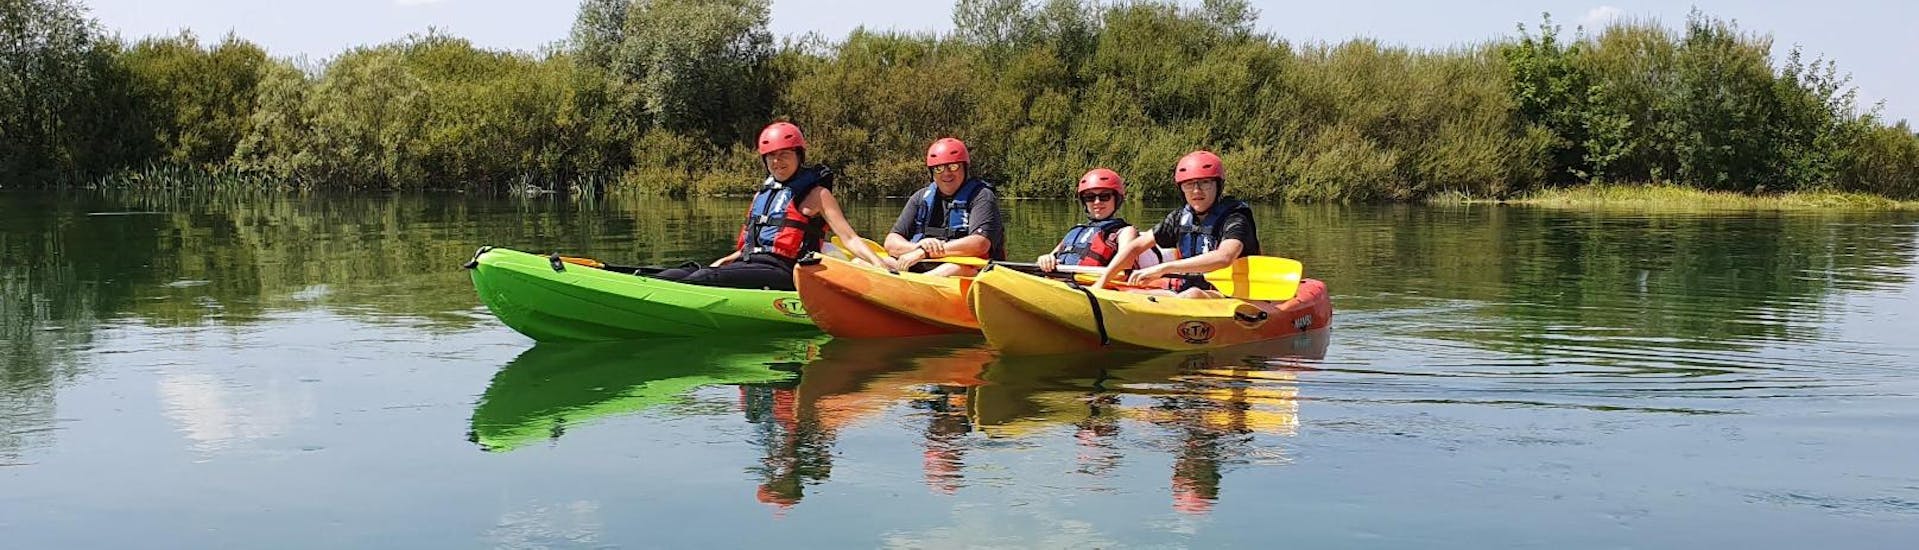 Kayak e canoa facile a Sinj - Cetina.